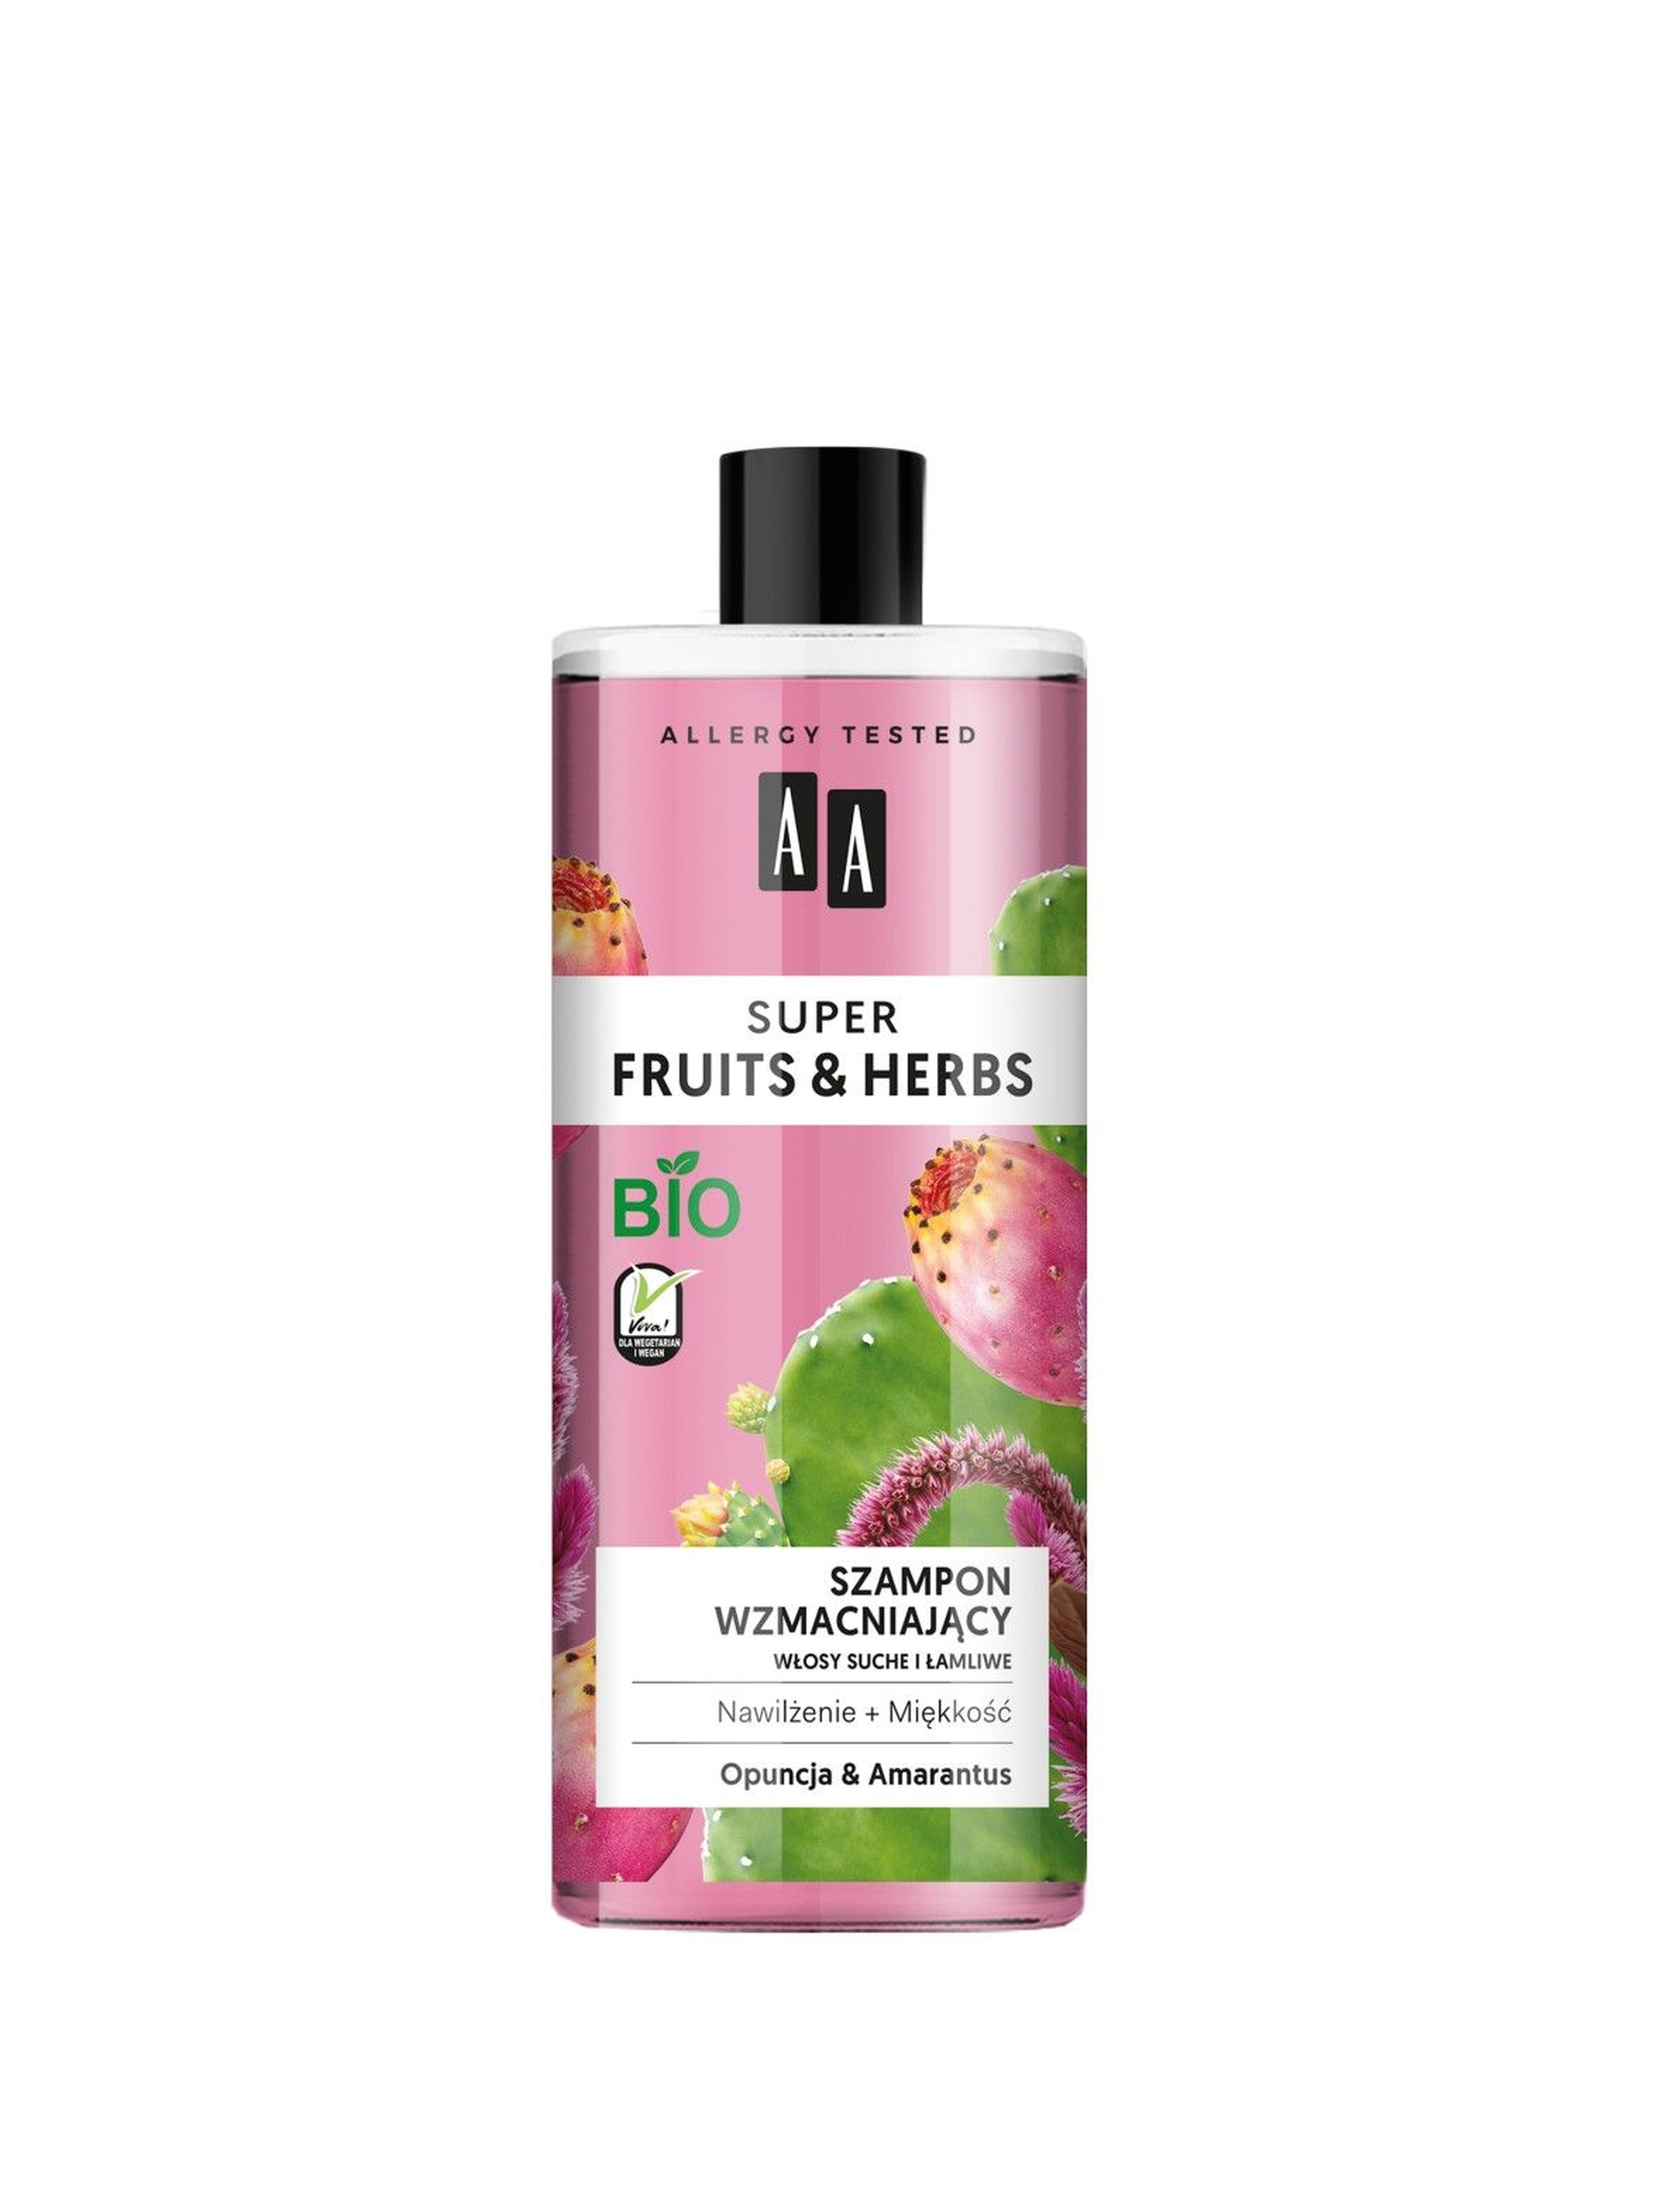 AA Super Fruits&Herbs szampon wzmacniający włosy suche i łamliwe opuncja&amarantus 500 ml